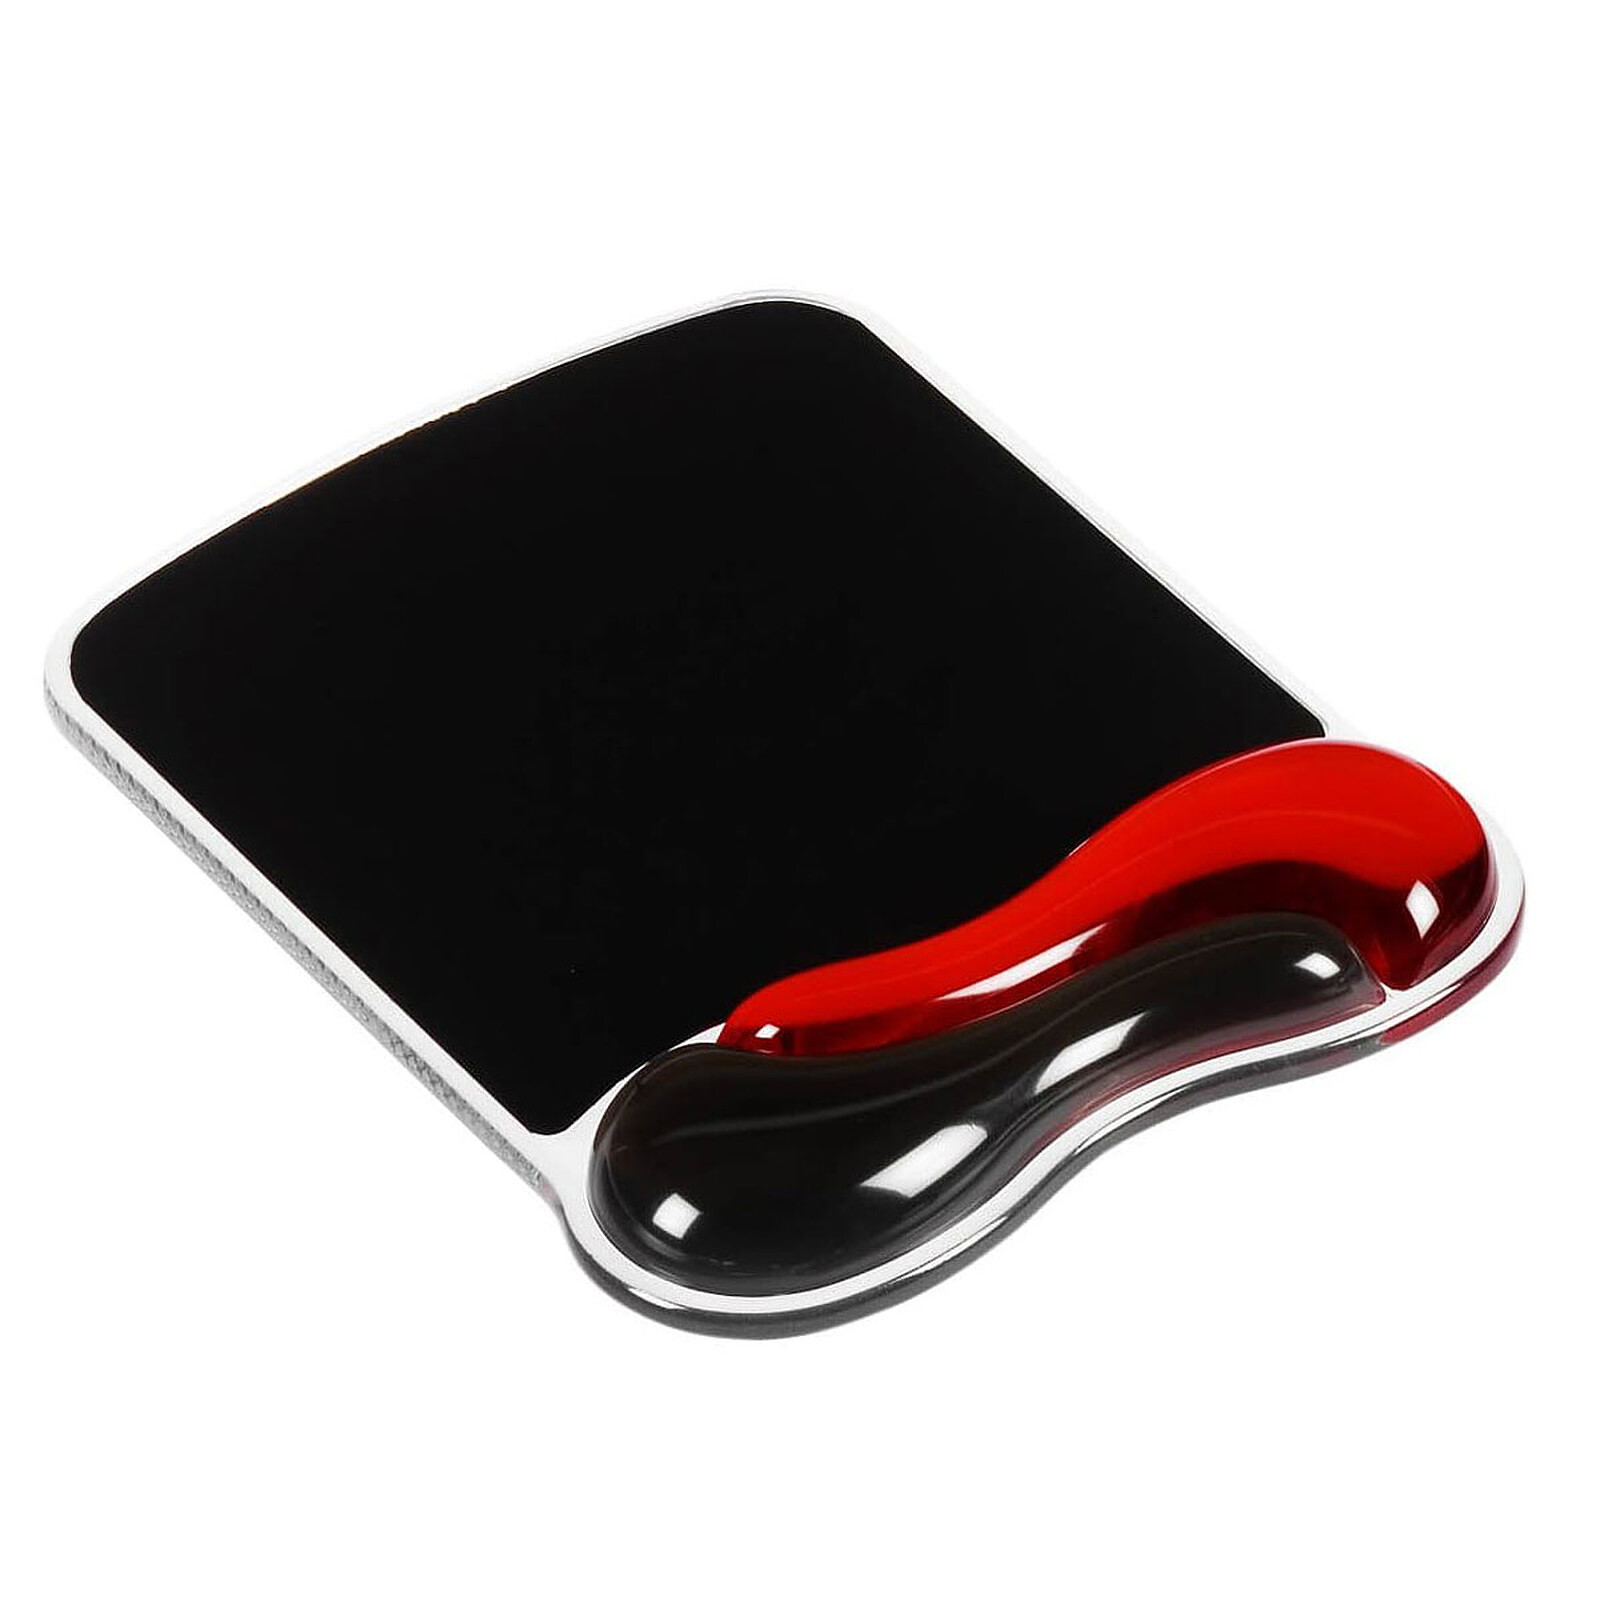 Logitech G G840 XL Gaming Mouse Pad (Noir) - Tapis de souris - Garantie 3  ans LDLC